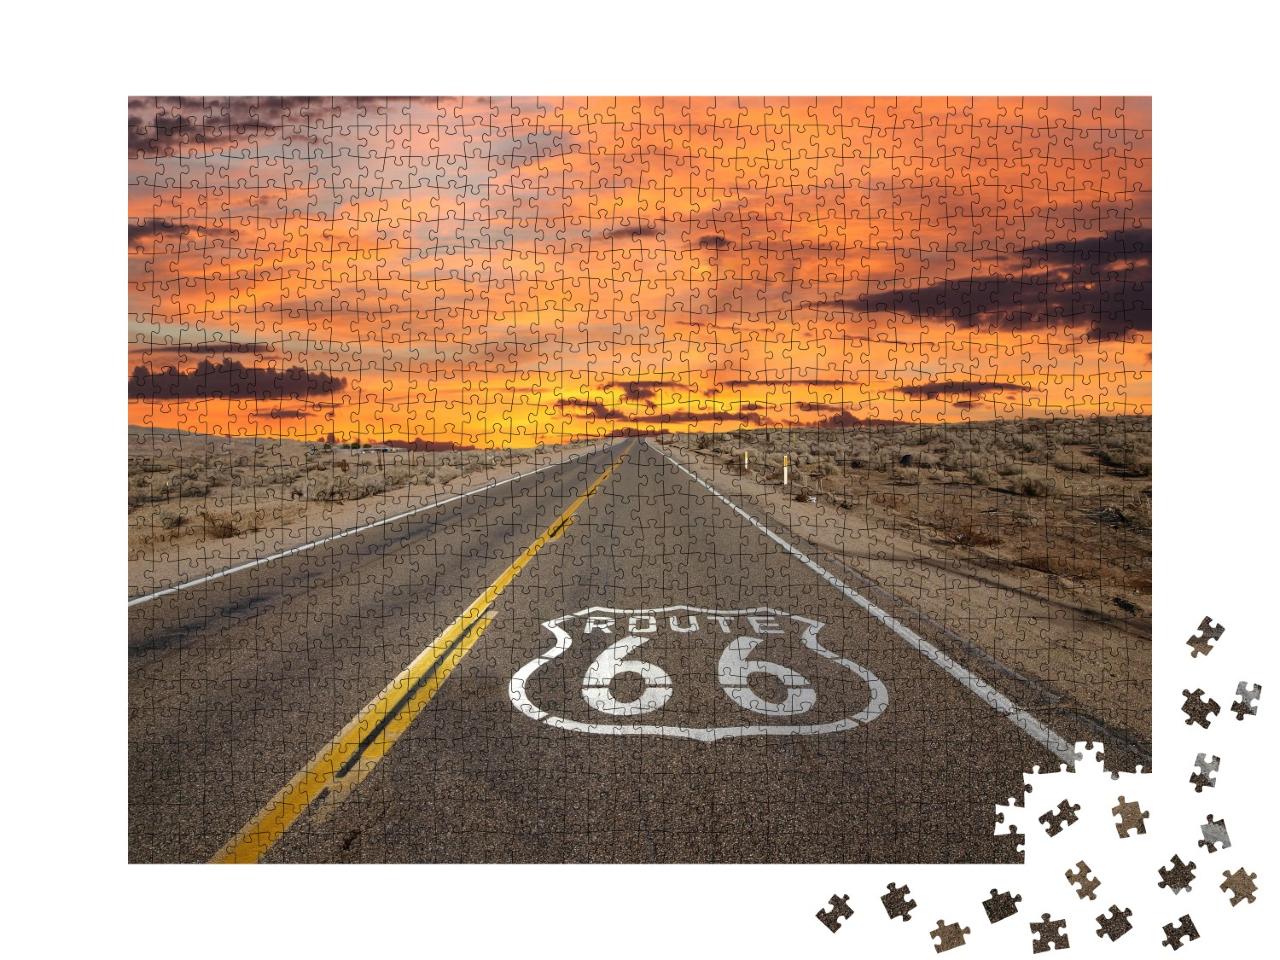 Puzzle de 1000 pièces « Panneaux de signalisation de la Route 66, Désert de Mojave »